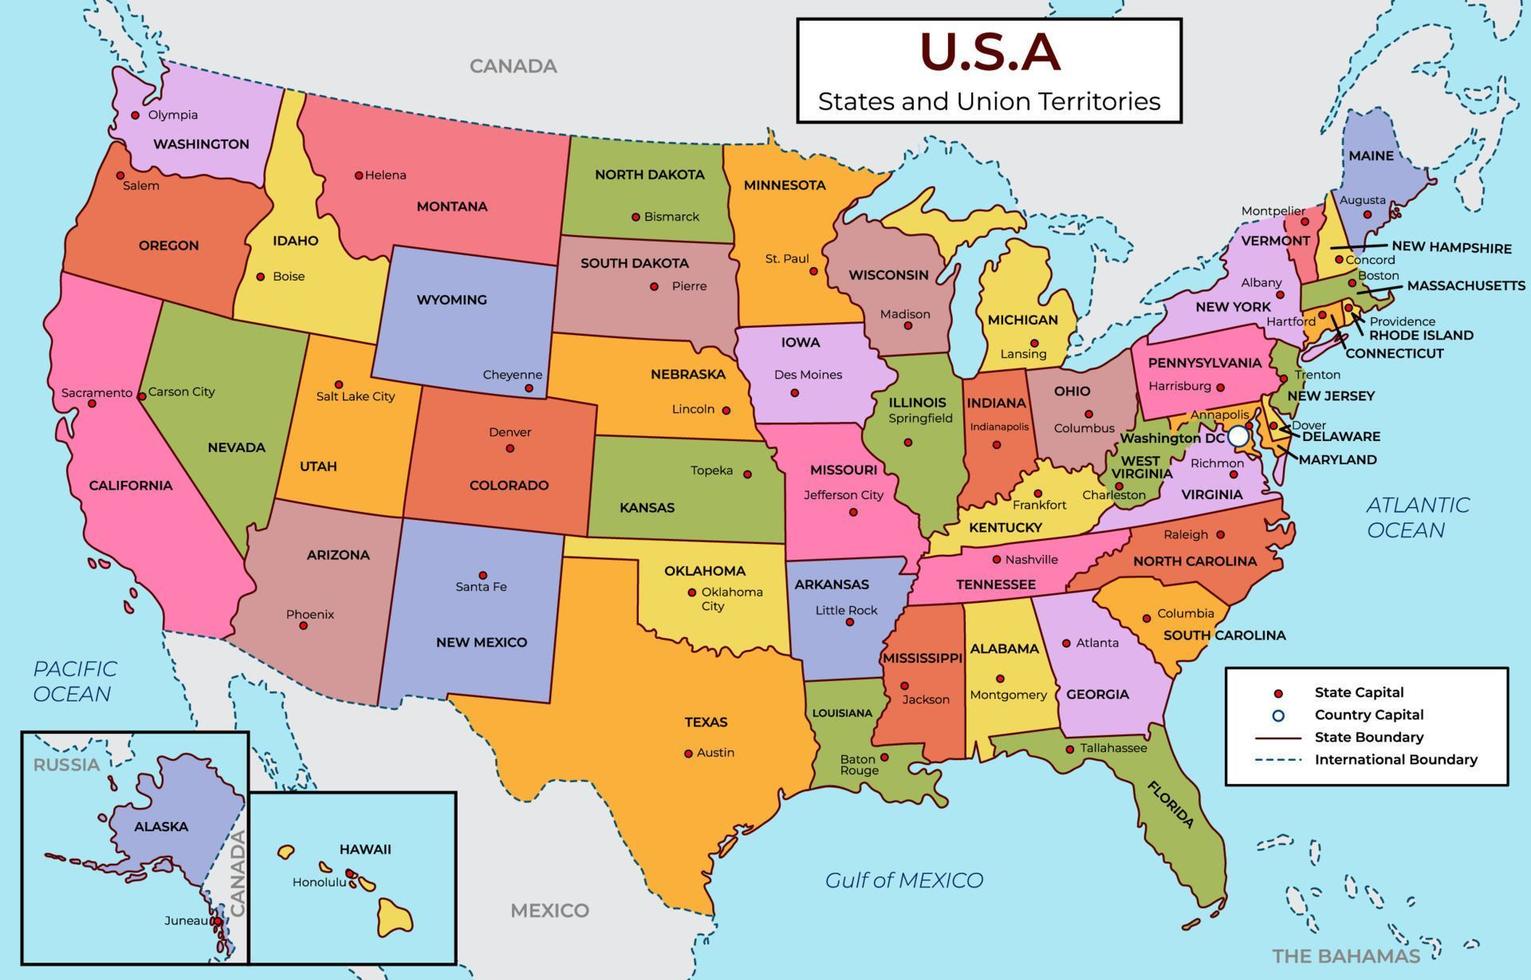 detailliert Karte von USA vektor